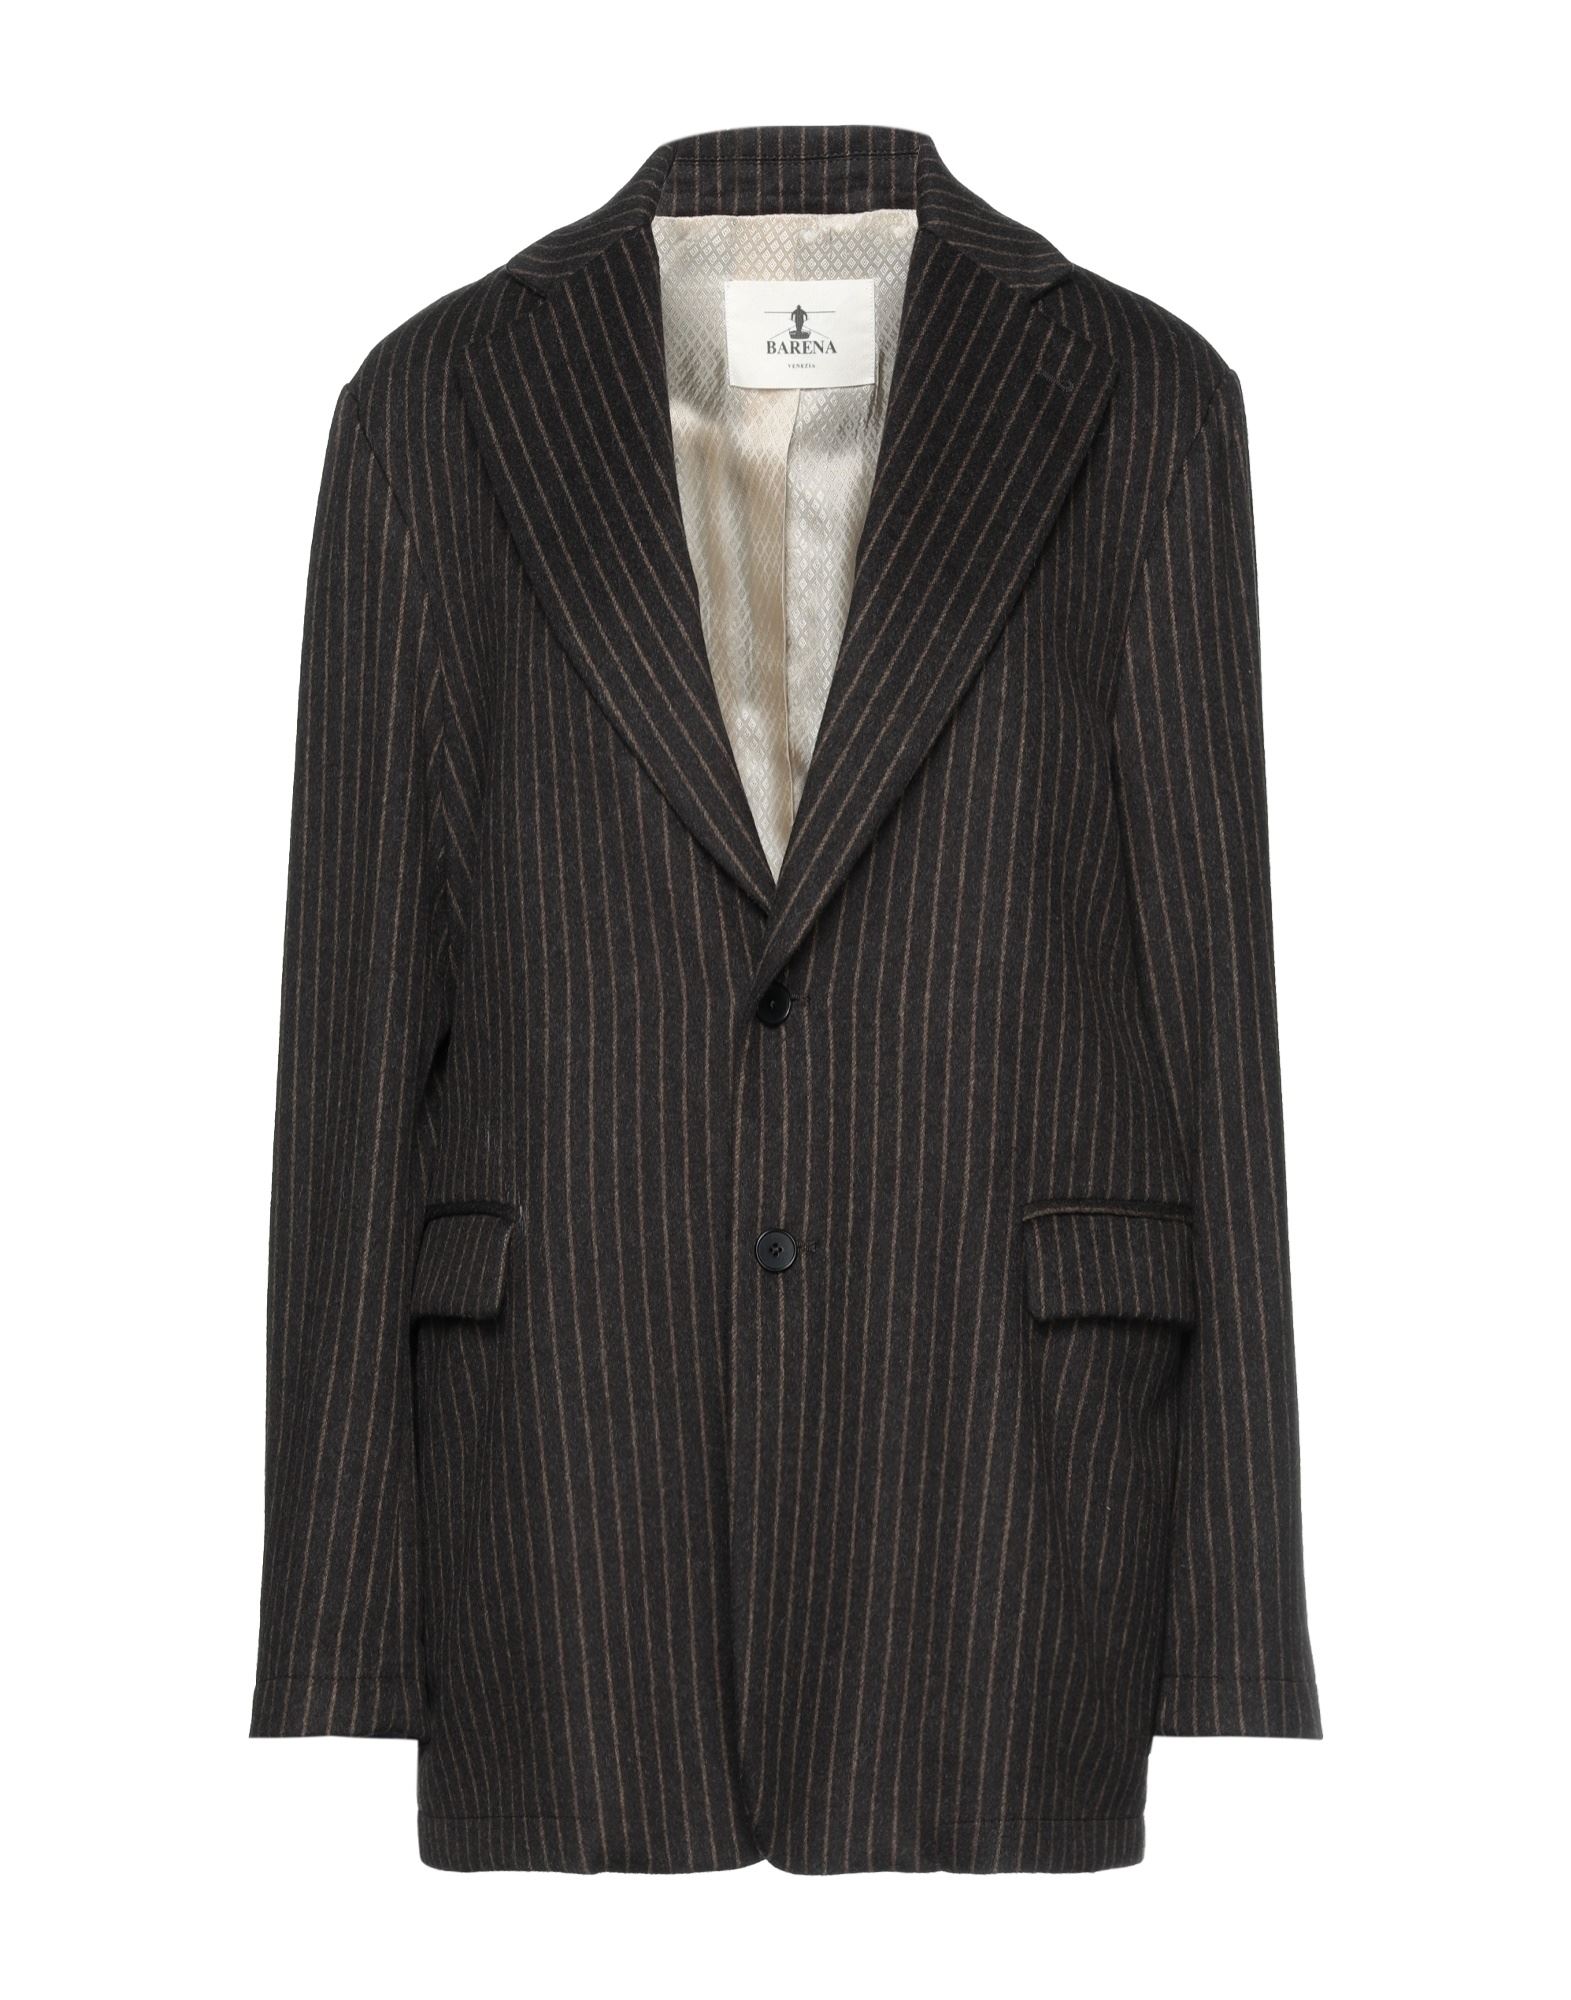 Barena Venezia Barena Suit Jackets In Brown